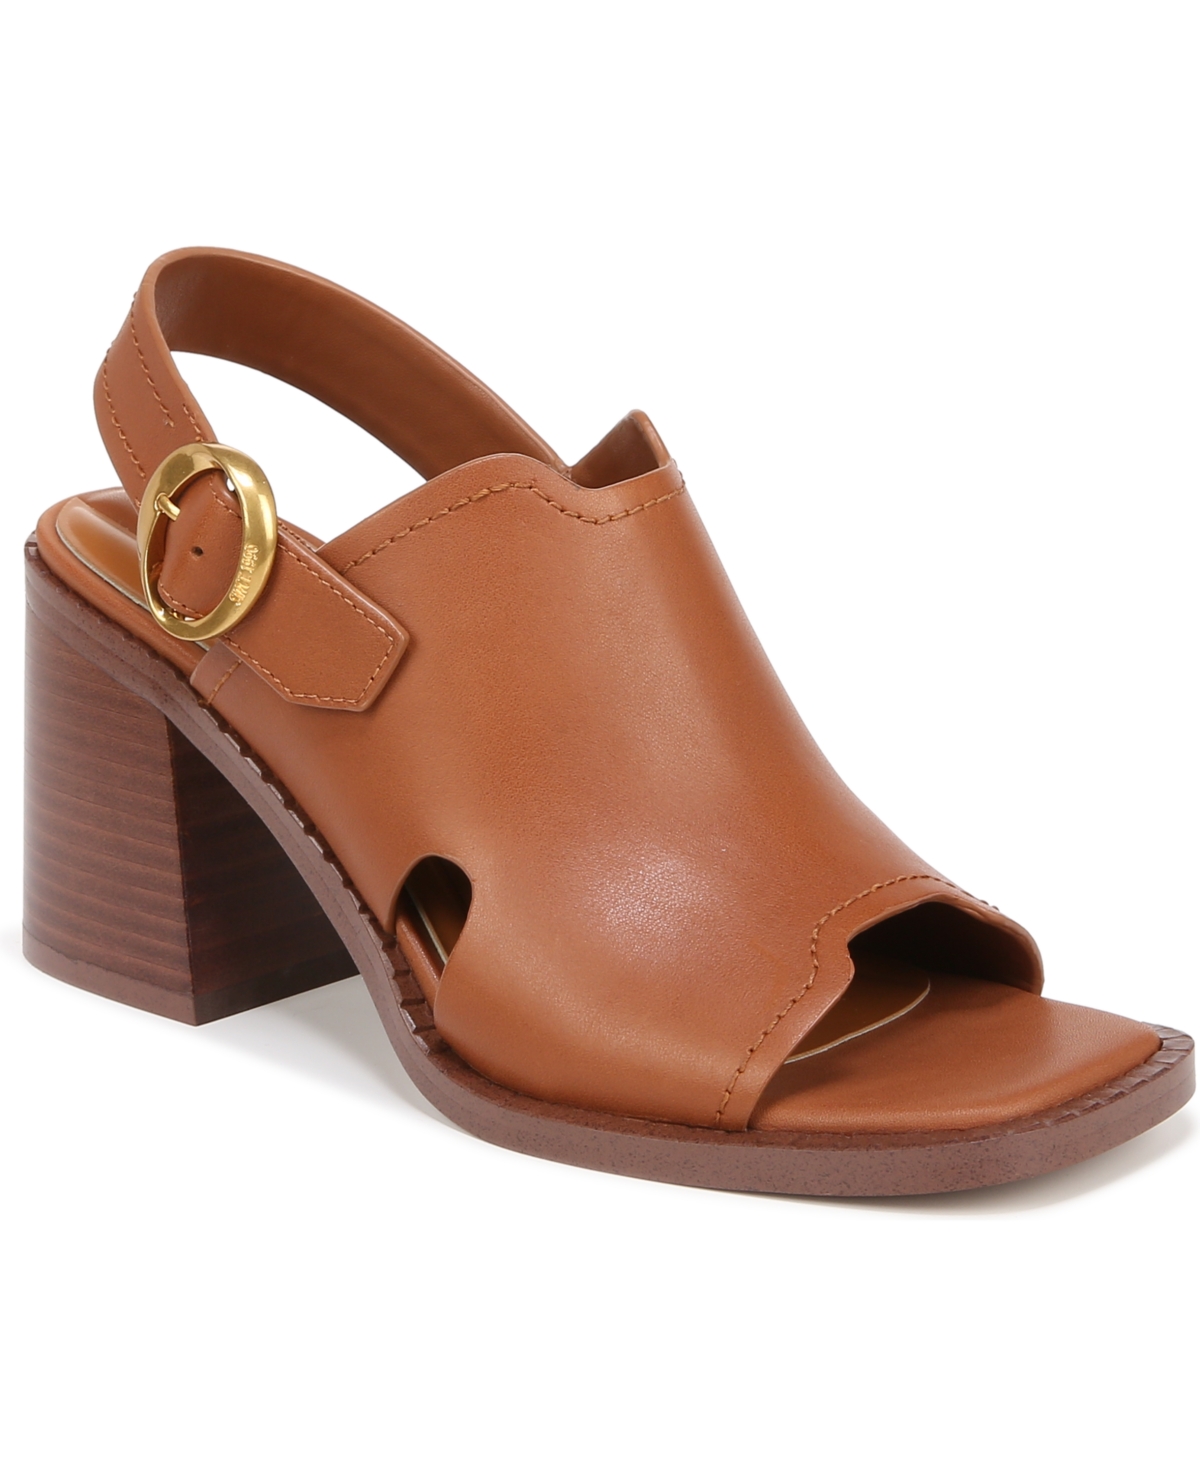 Women's Amy Slingback Block Heel Sandals - Cognac Brown Leather